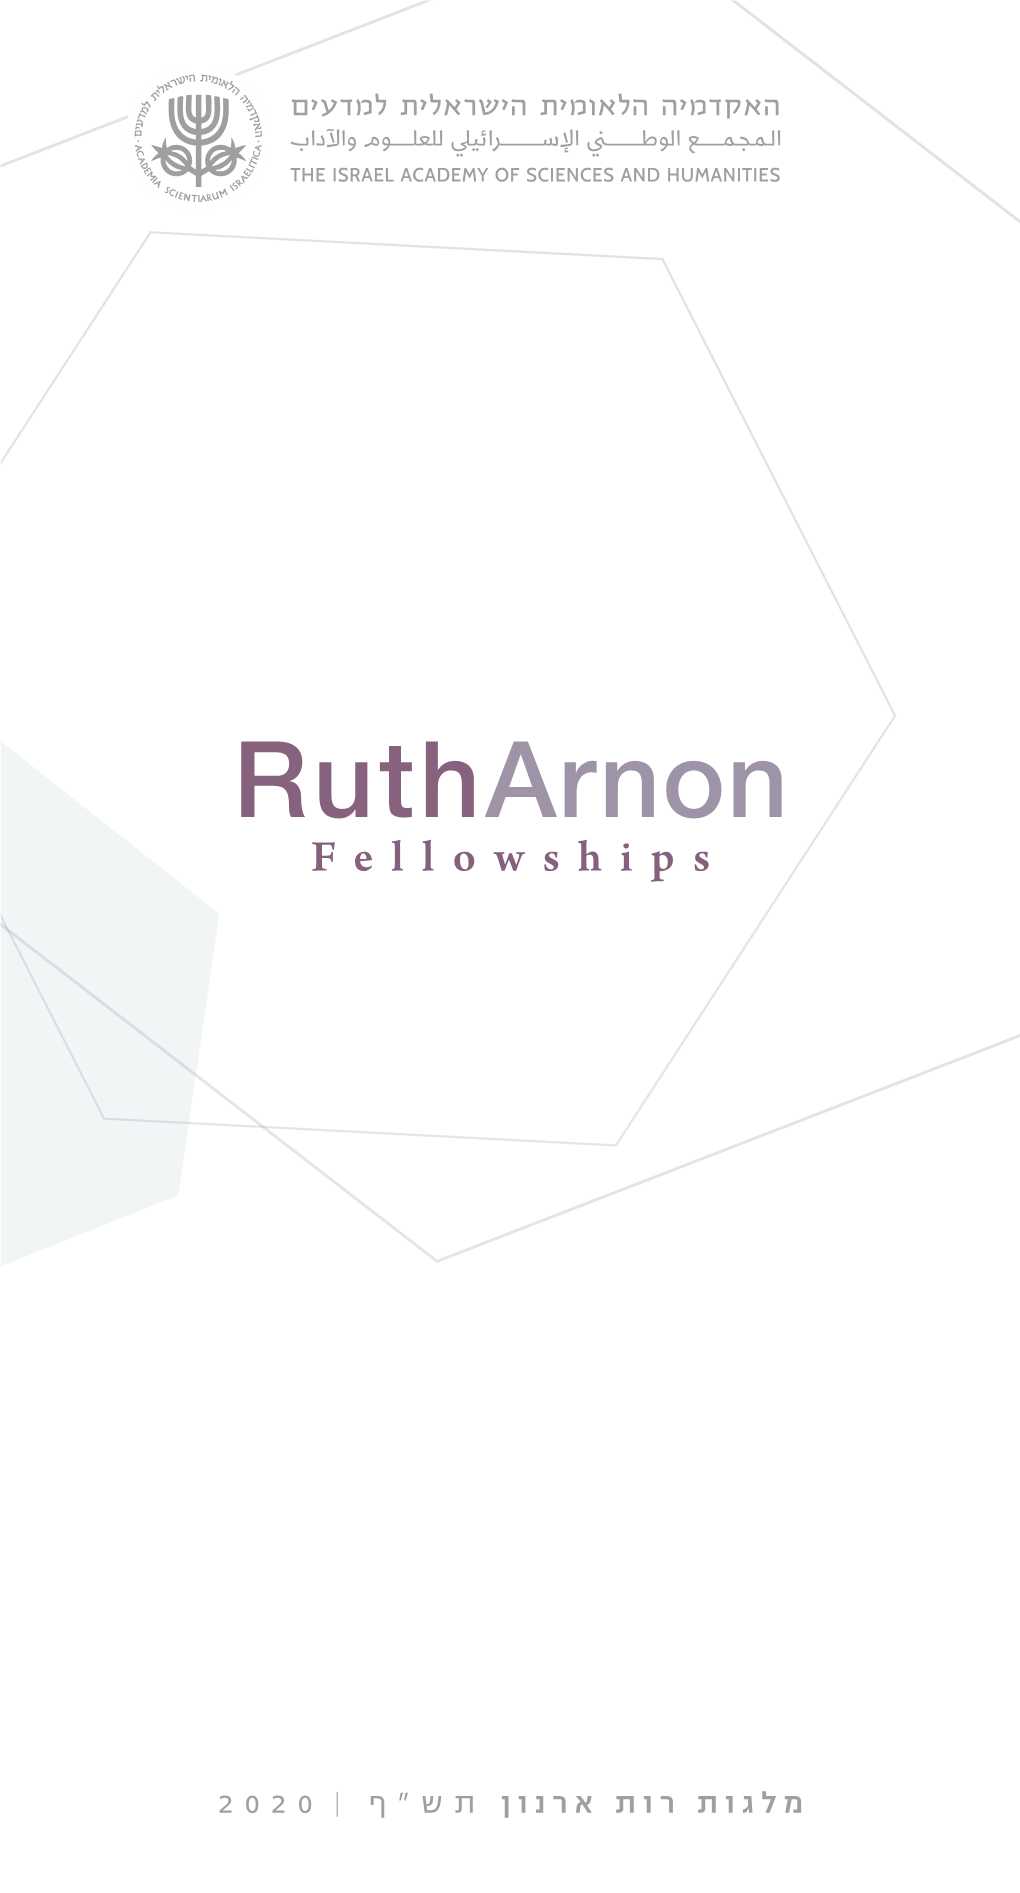 Rutharnon Fellowships